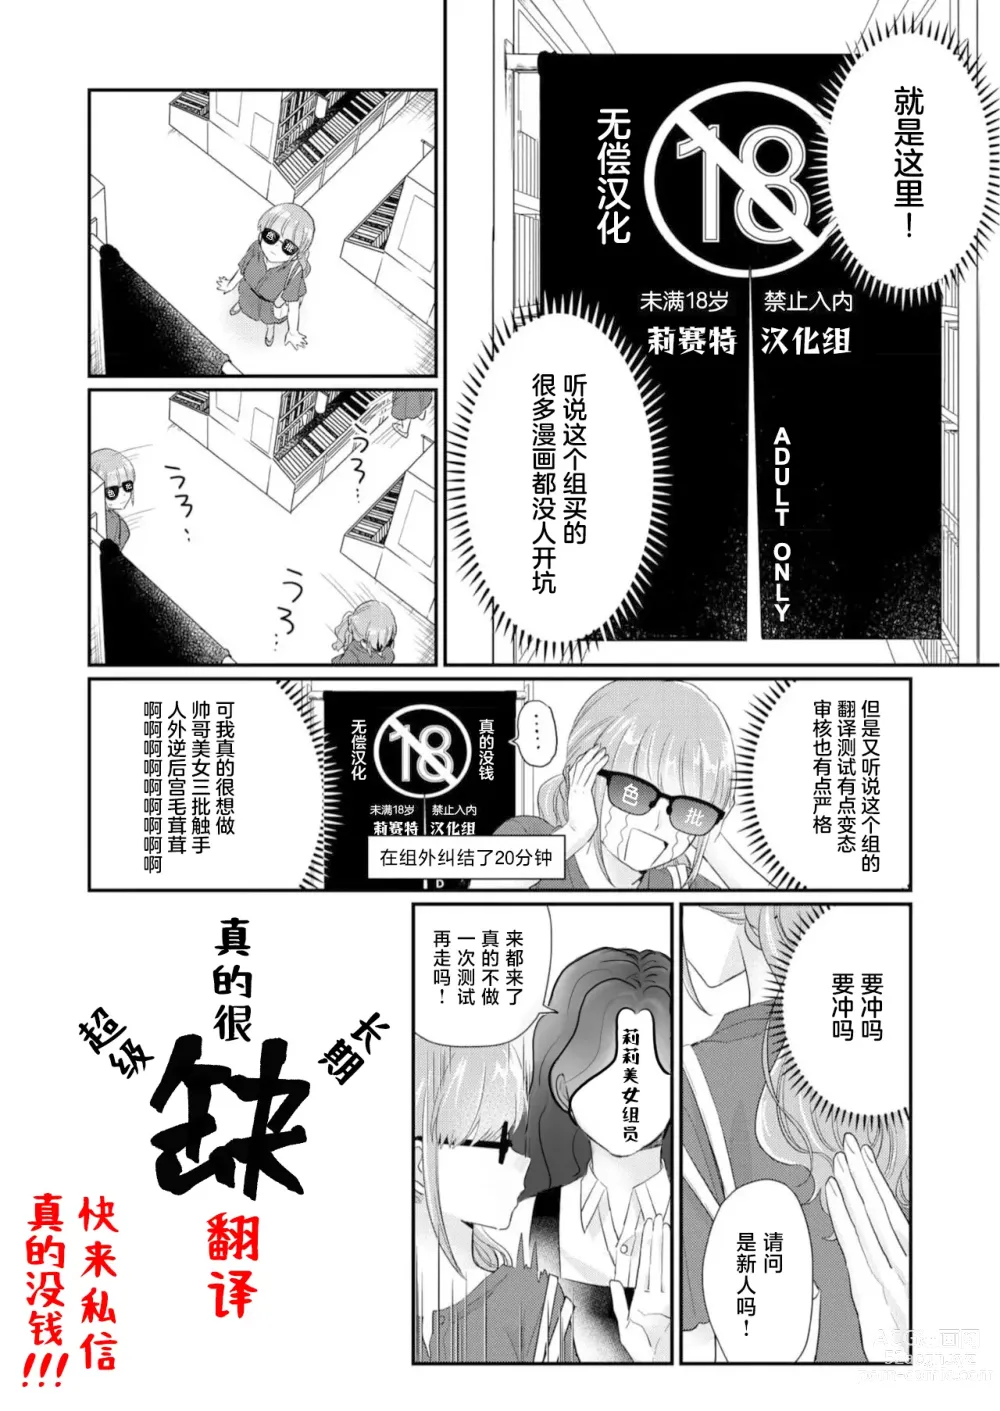 Page 30 of manga 「…那我不忍耐了哦？」在最深处好几次…年上男友的绝妙开关